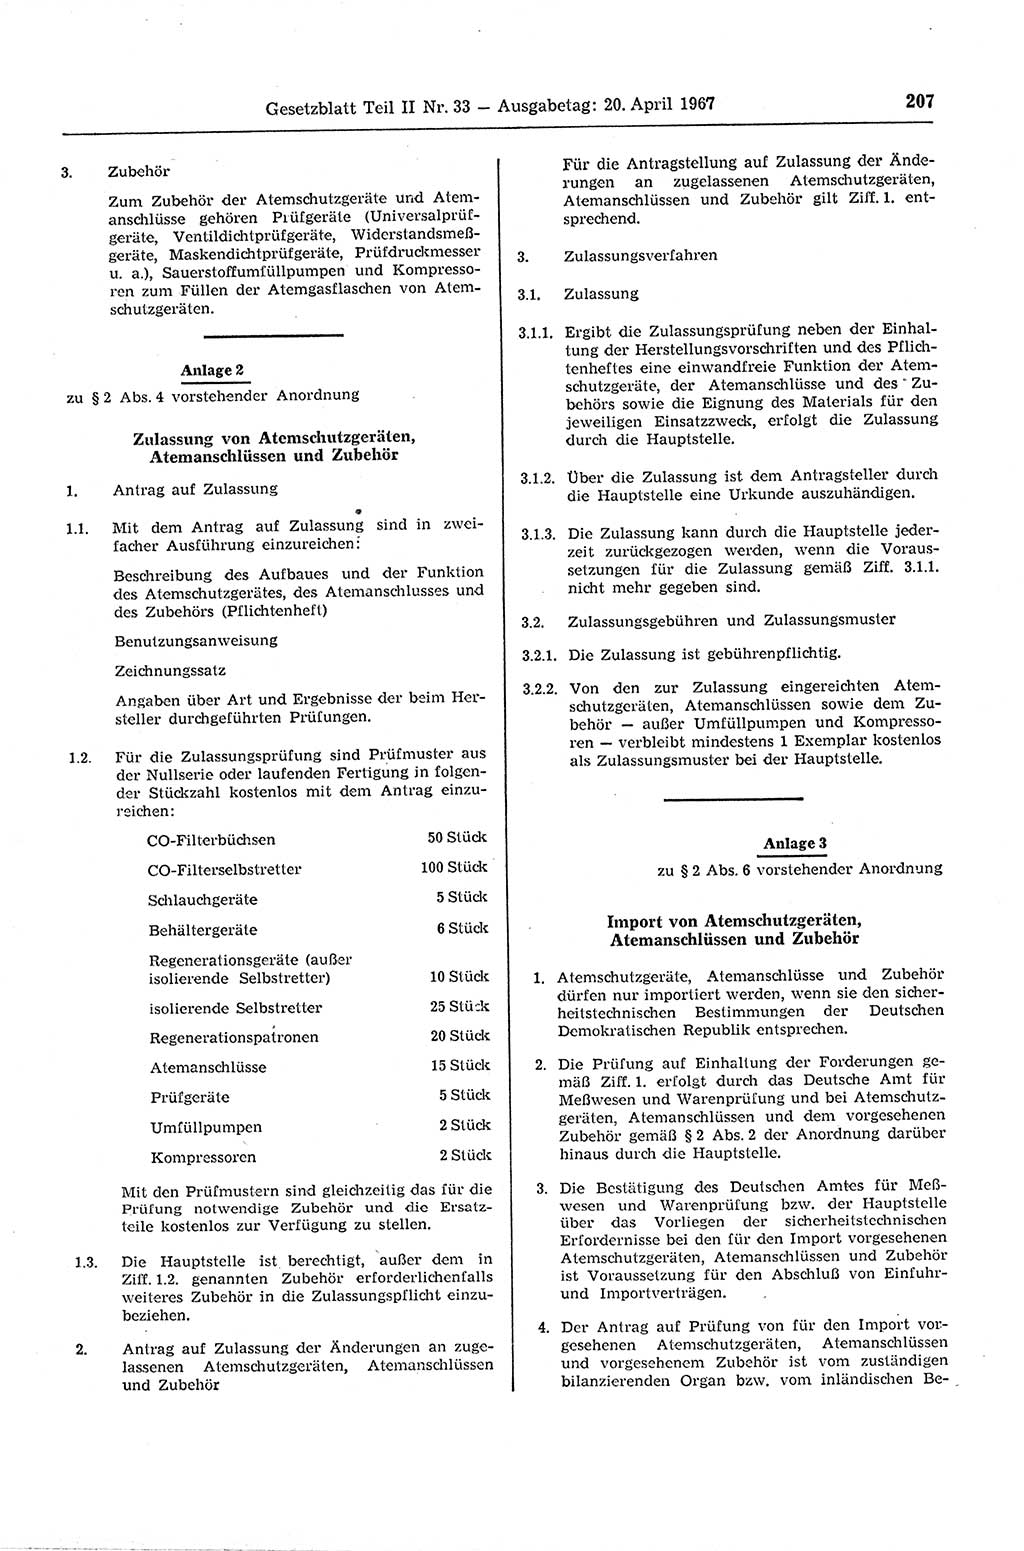 Gesetzblatt (GBl.) der Deutschen Demokratischen Republik (DDR) Teil ⅠⅠ 1967, Seite 207 (GBl. DDR ⅠⅠ 1967, S. 207)